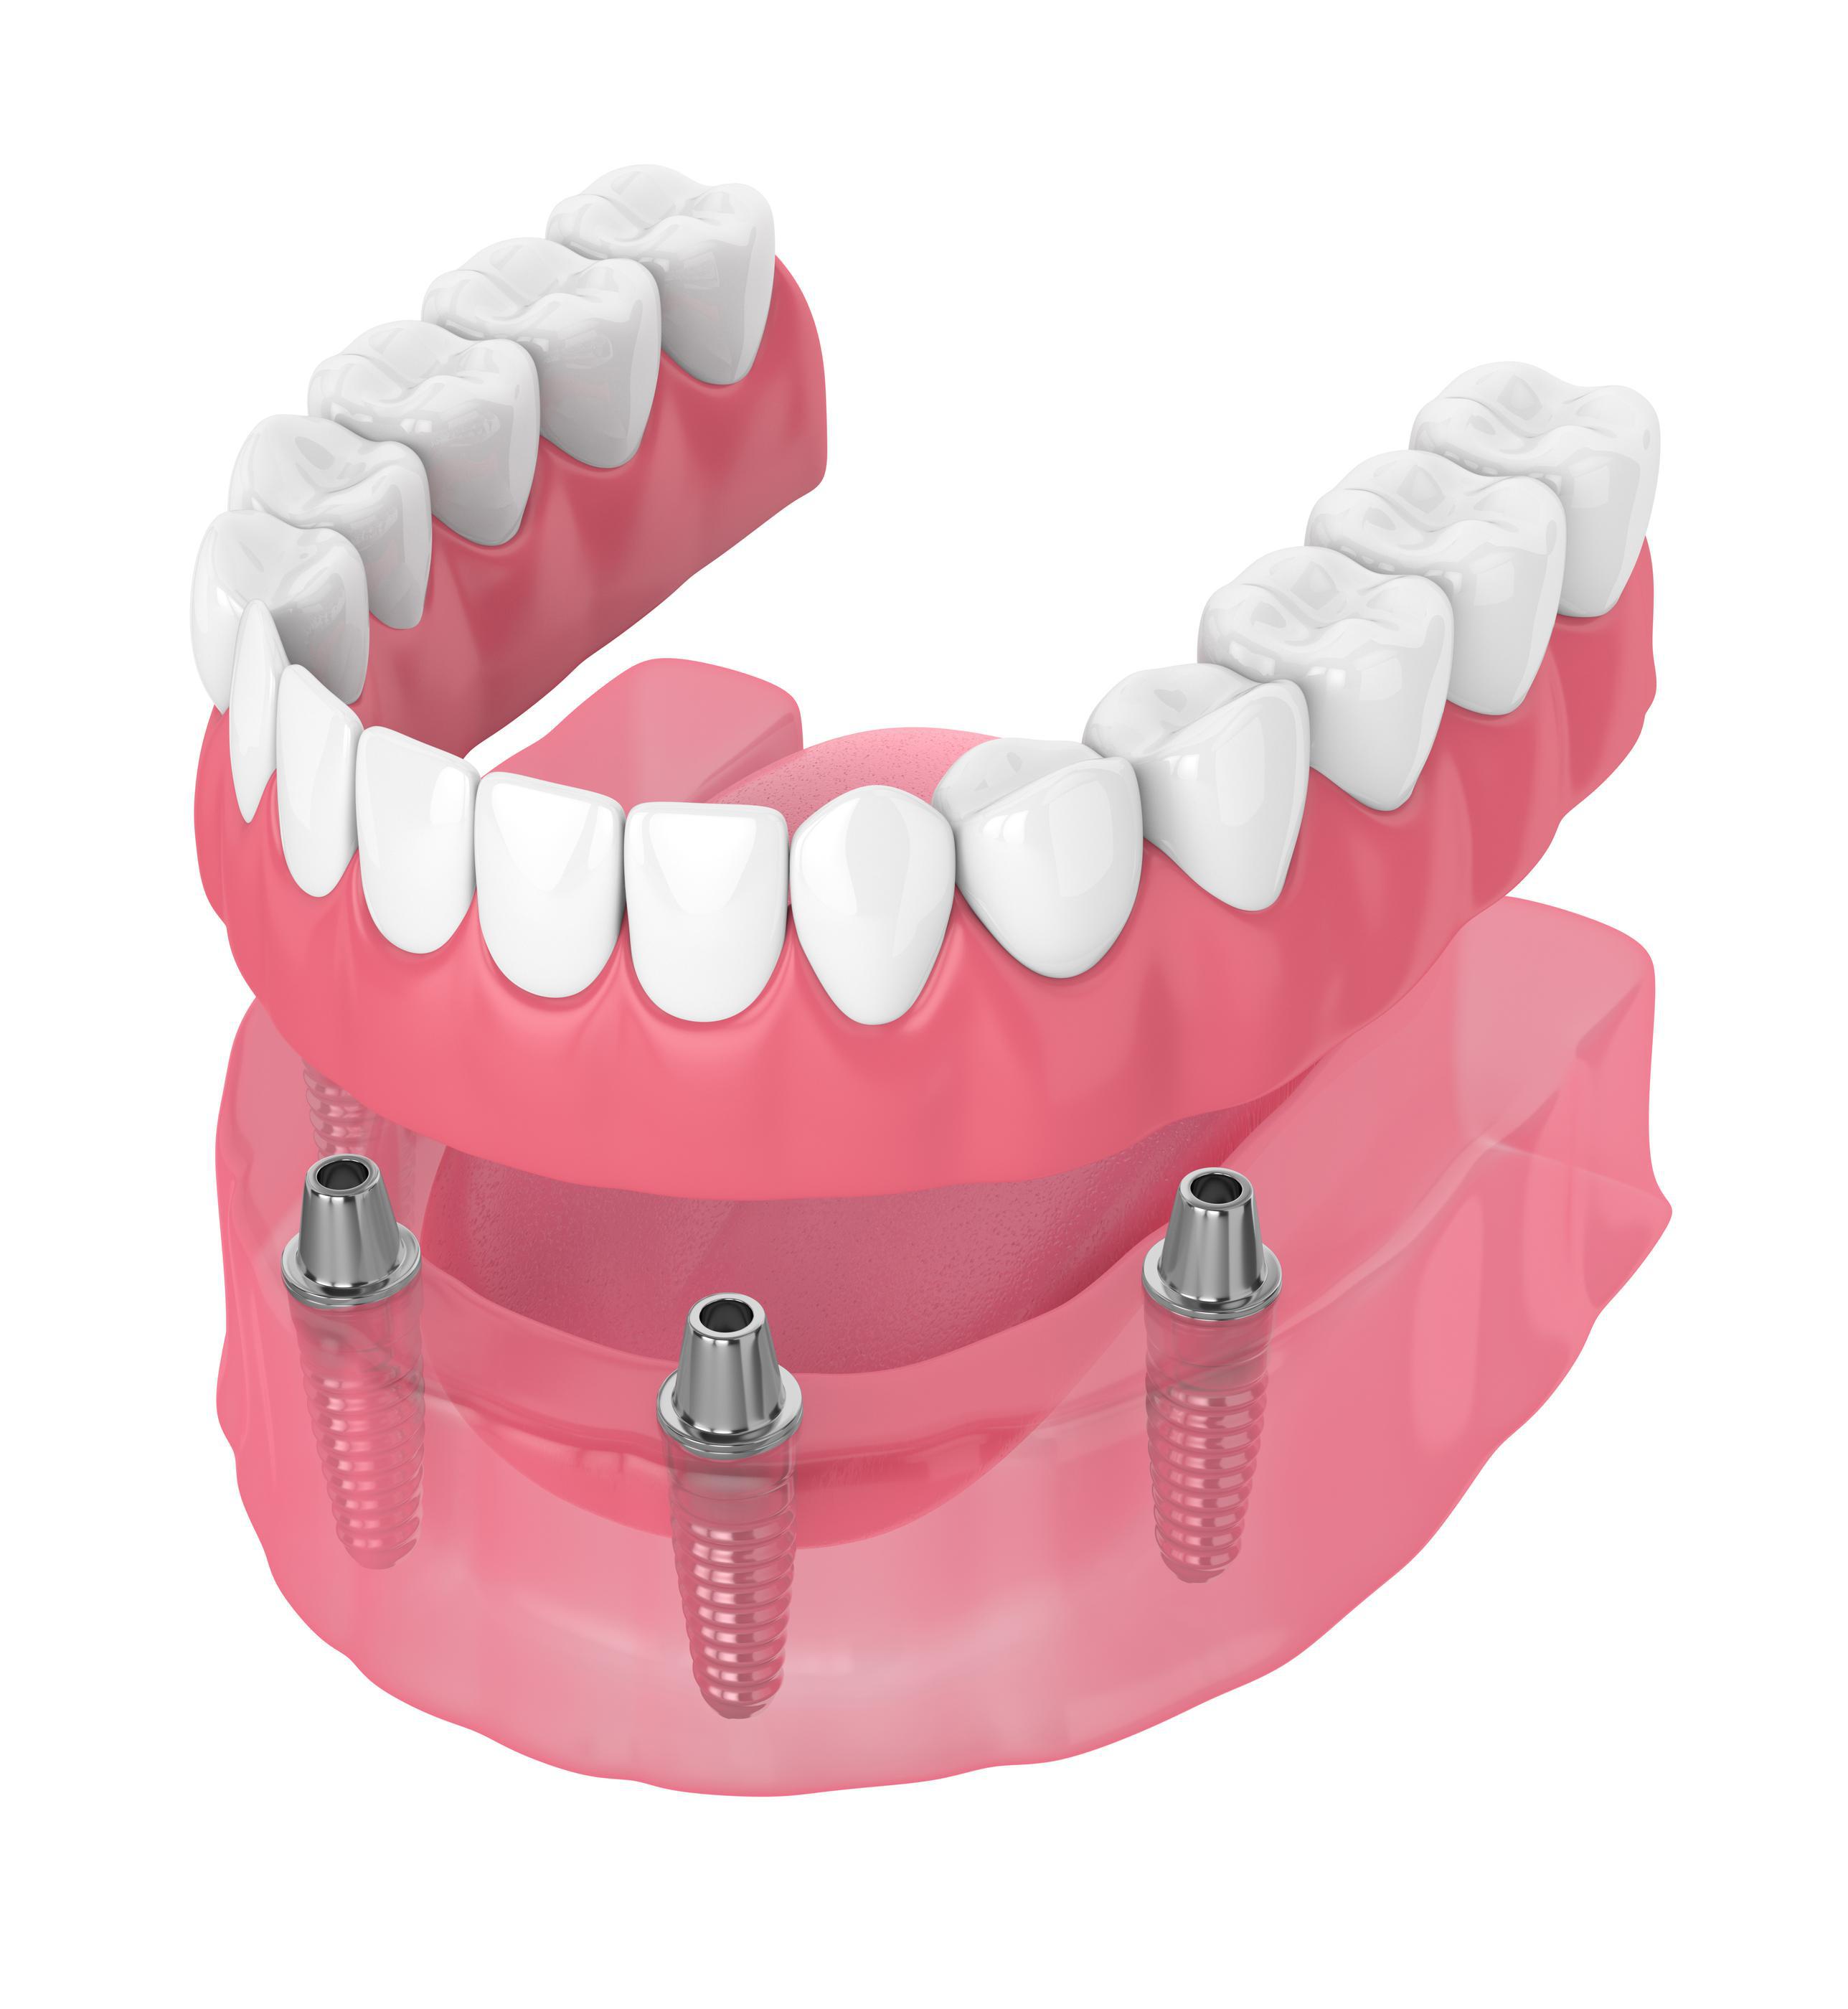 Full Arch Dental Implants in Mankato MN